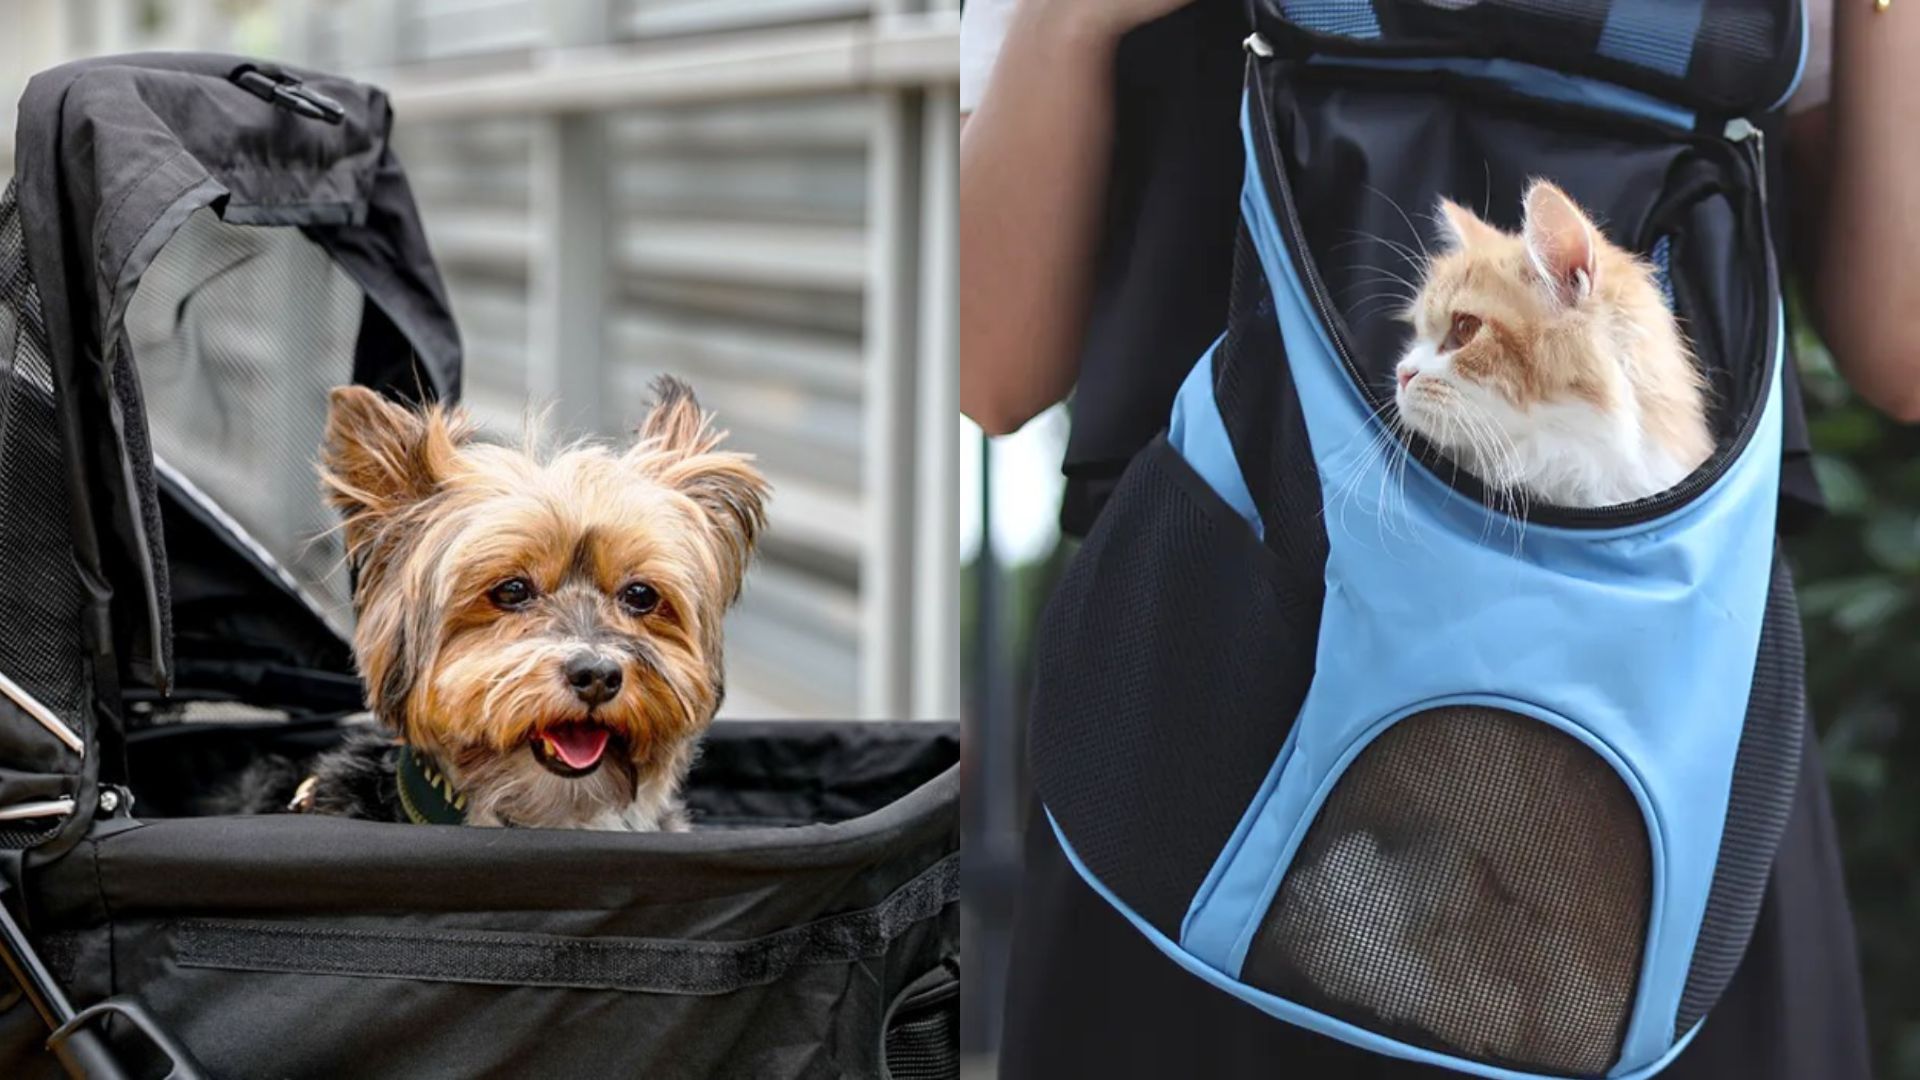 Las mascotas sí pueden viajar en el transporte público: conoce los horarios y requisitos